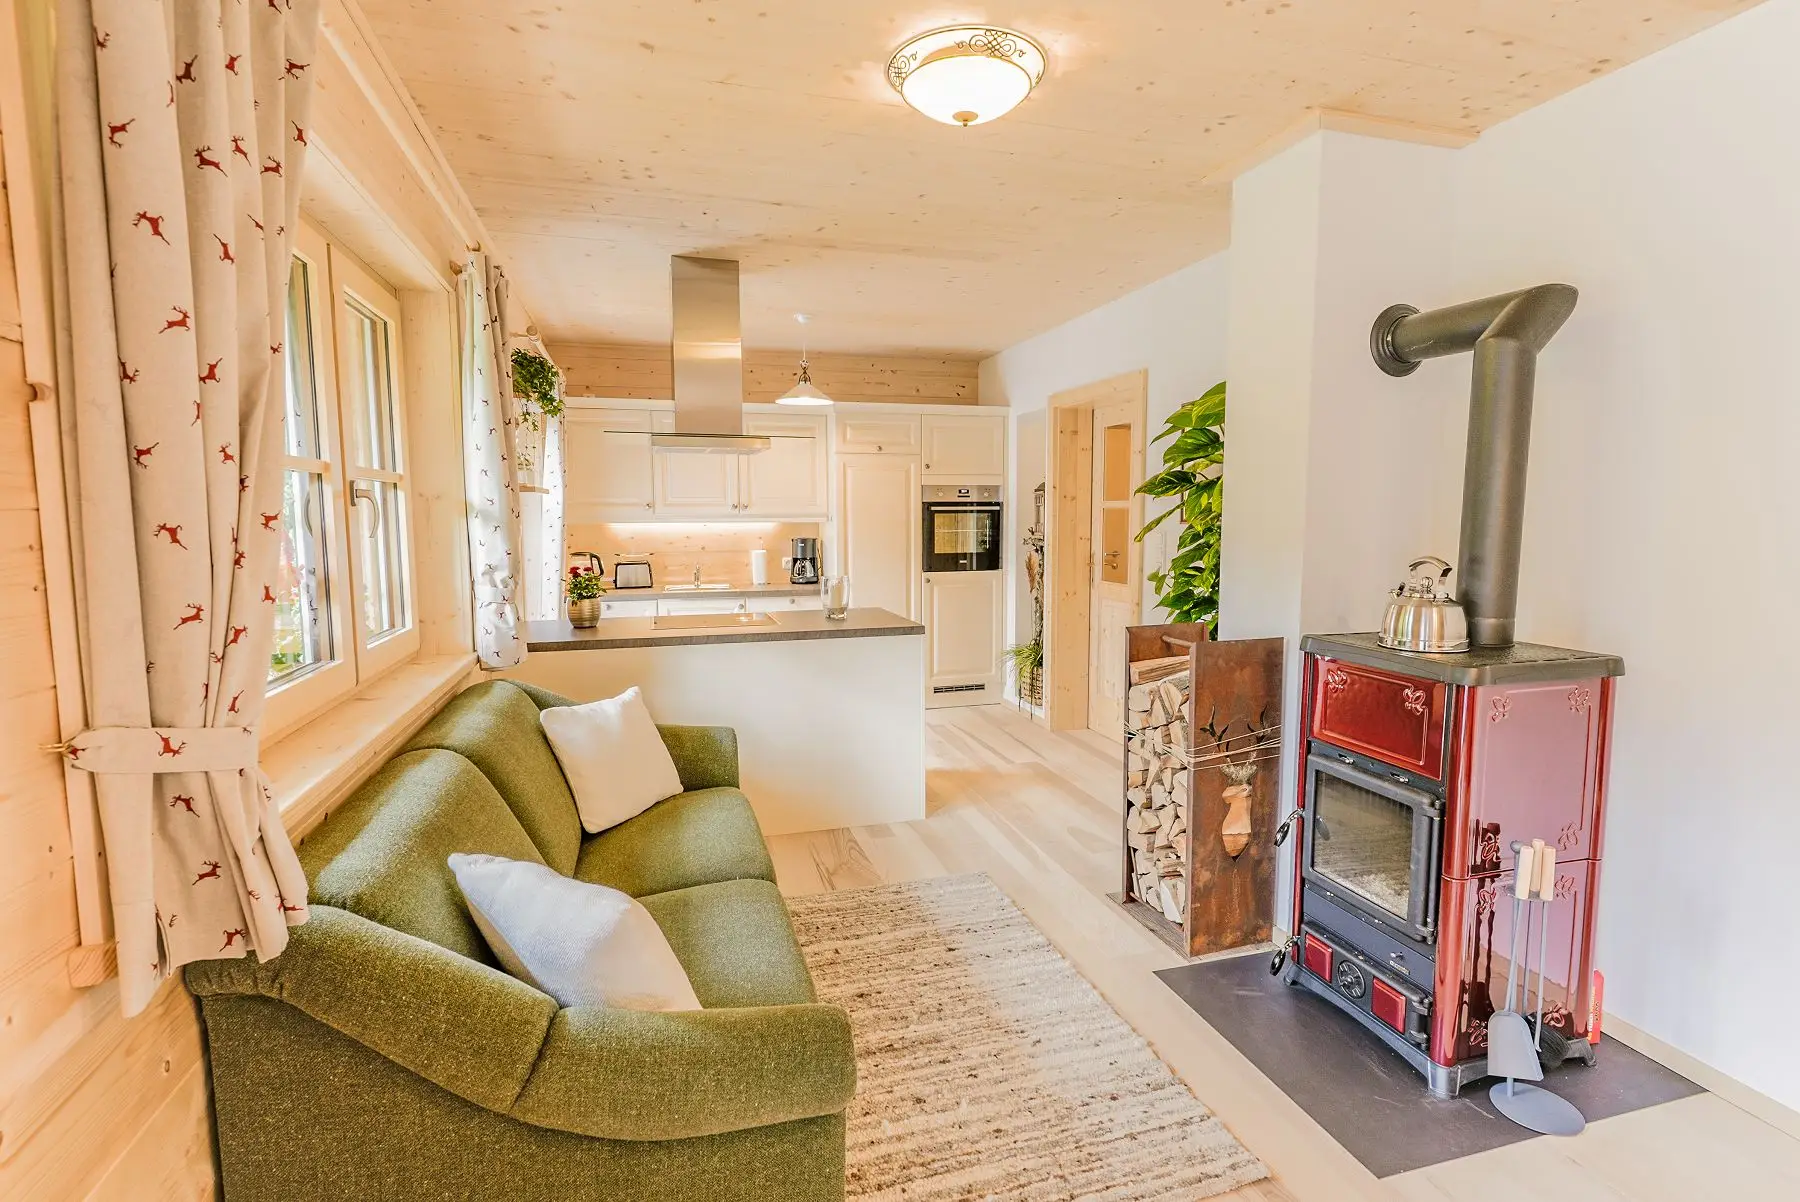 Ein gemütliches Wohnzimmer mit Kamin und Holzofen, perfekt für einen erholsamen Kurzurlaub im Ausseerland.